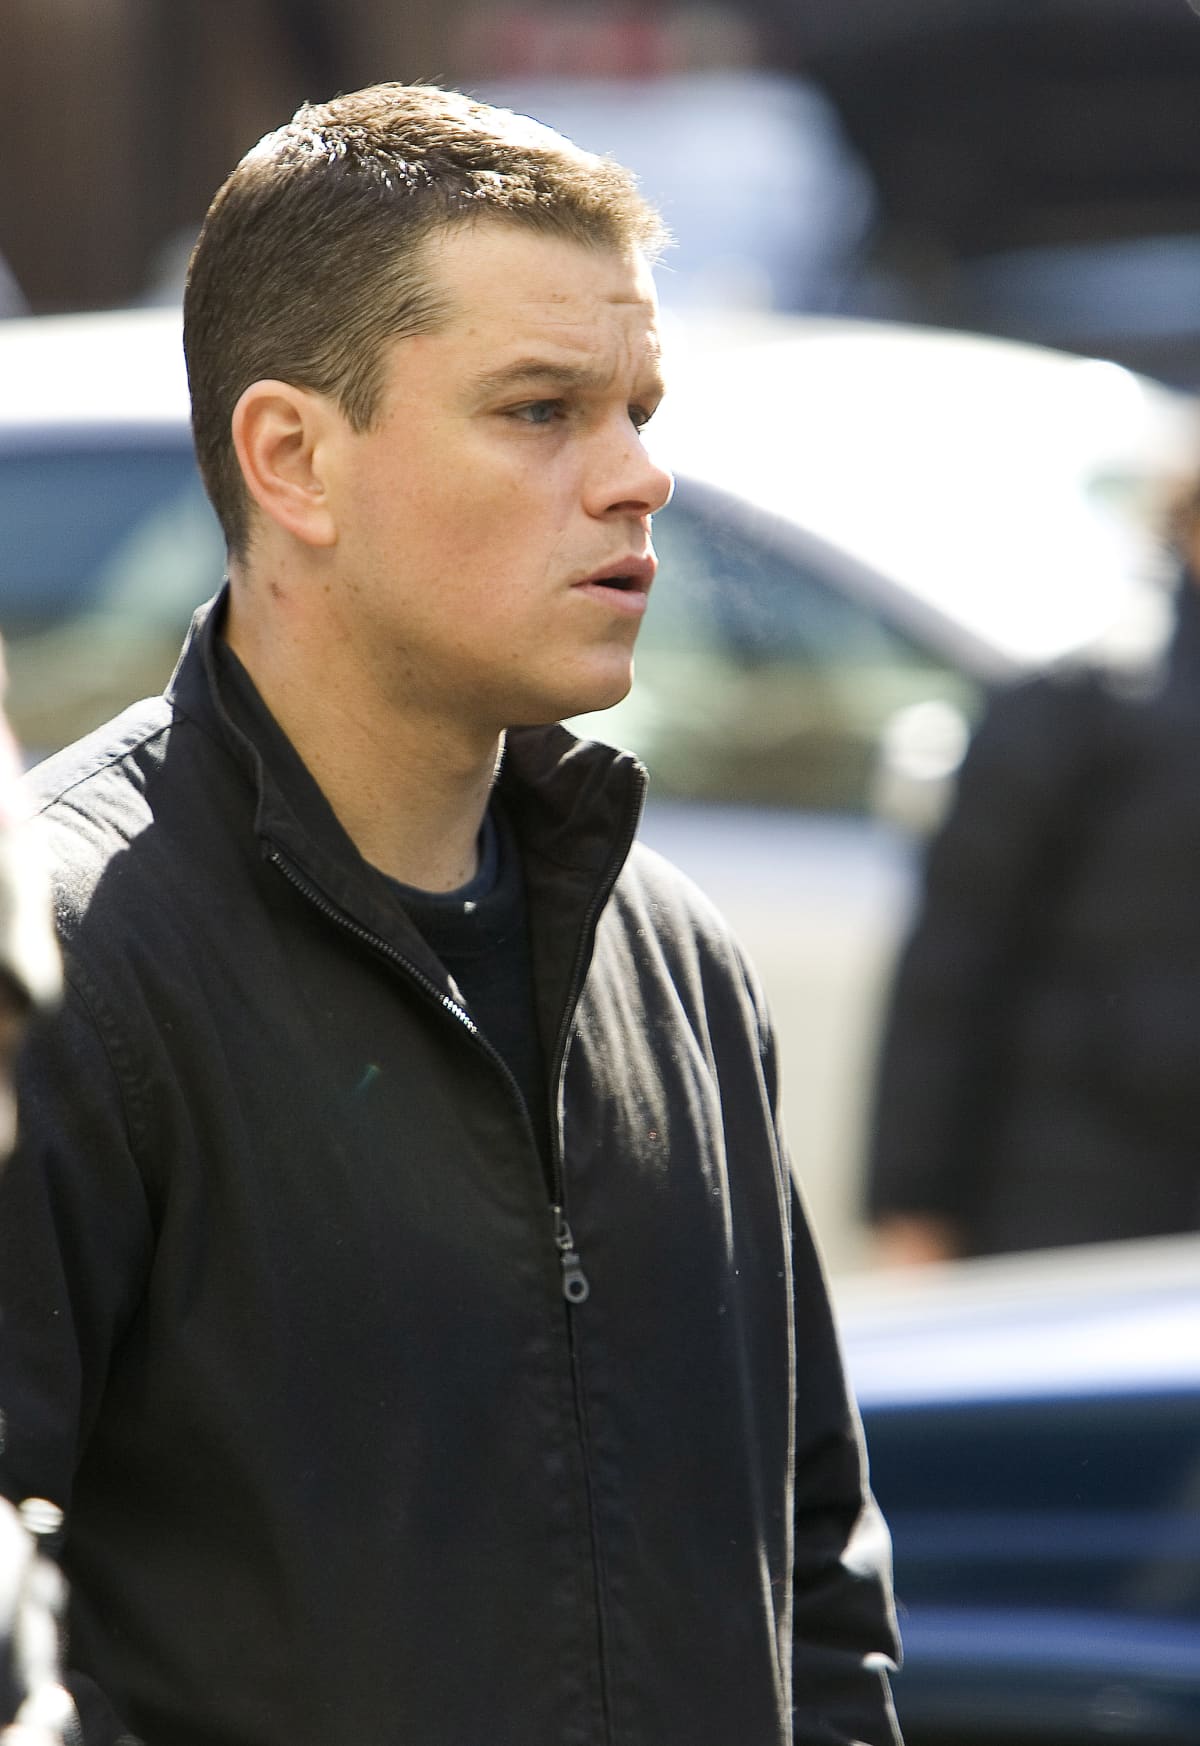 Matt Damon (Photo by Brian Ach/WireImage) on set as Jason Bourne